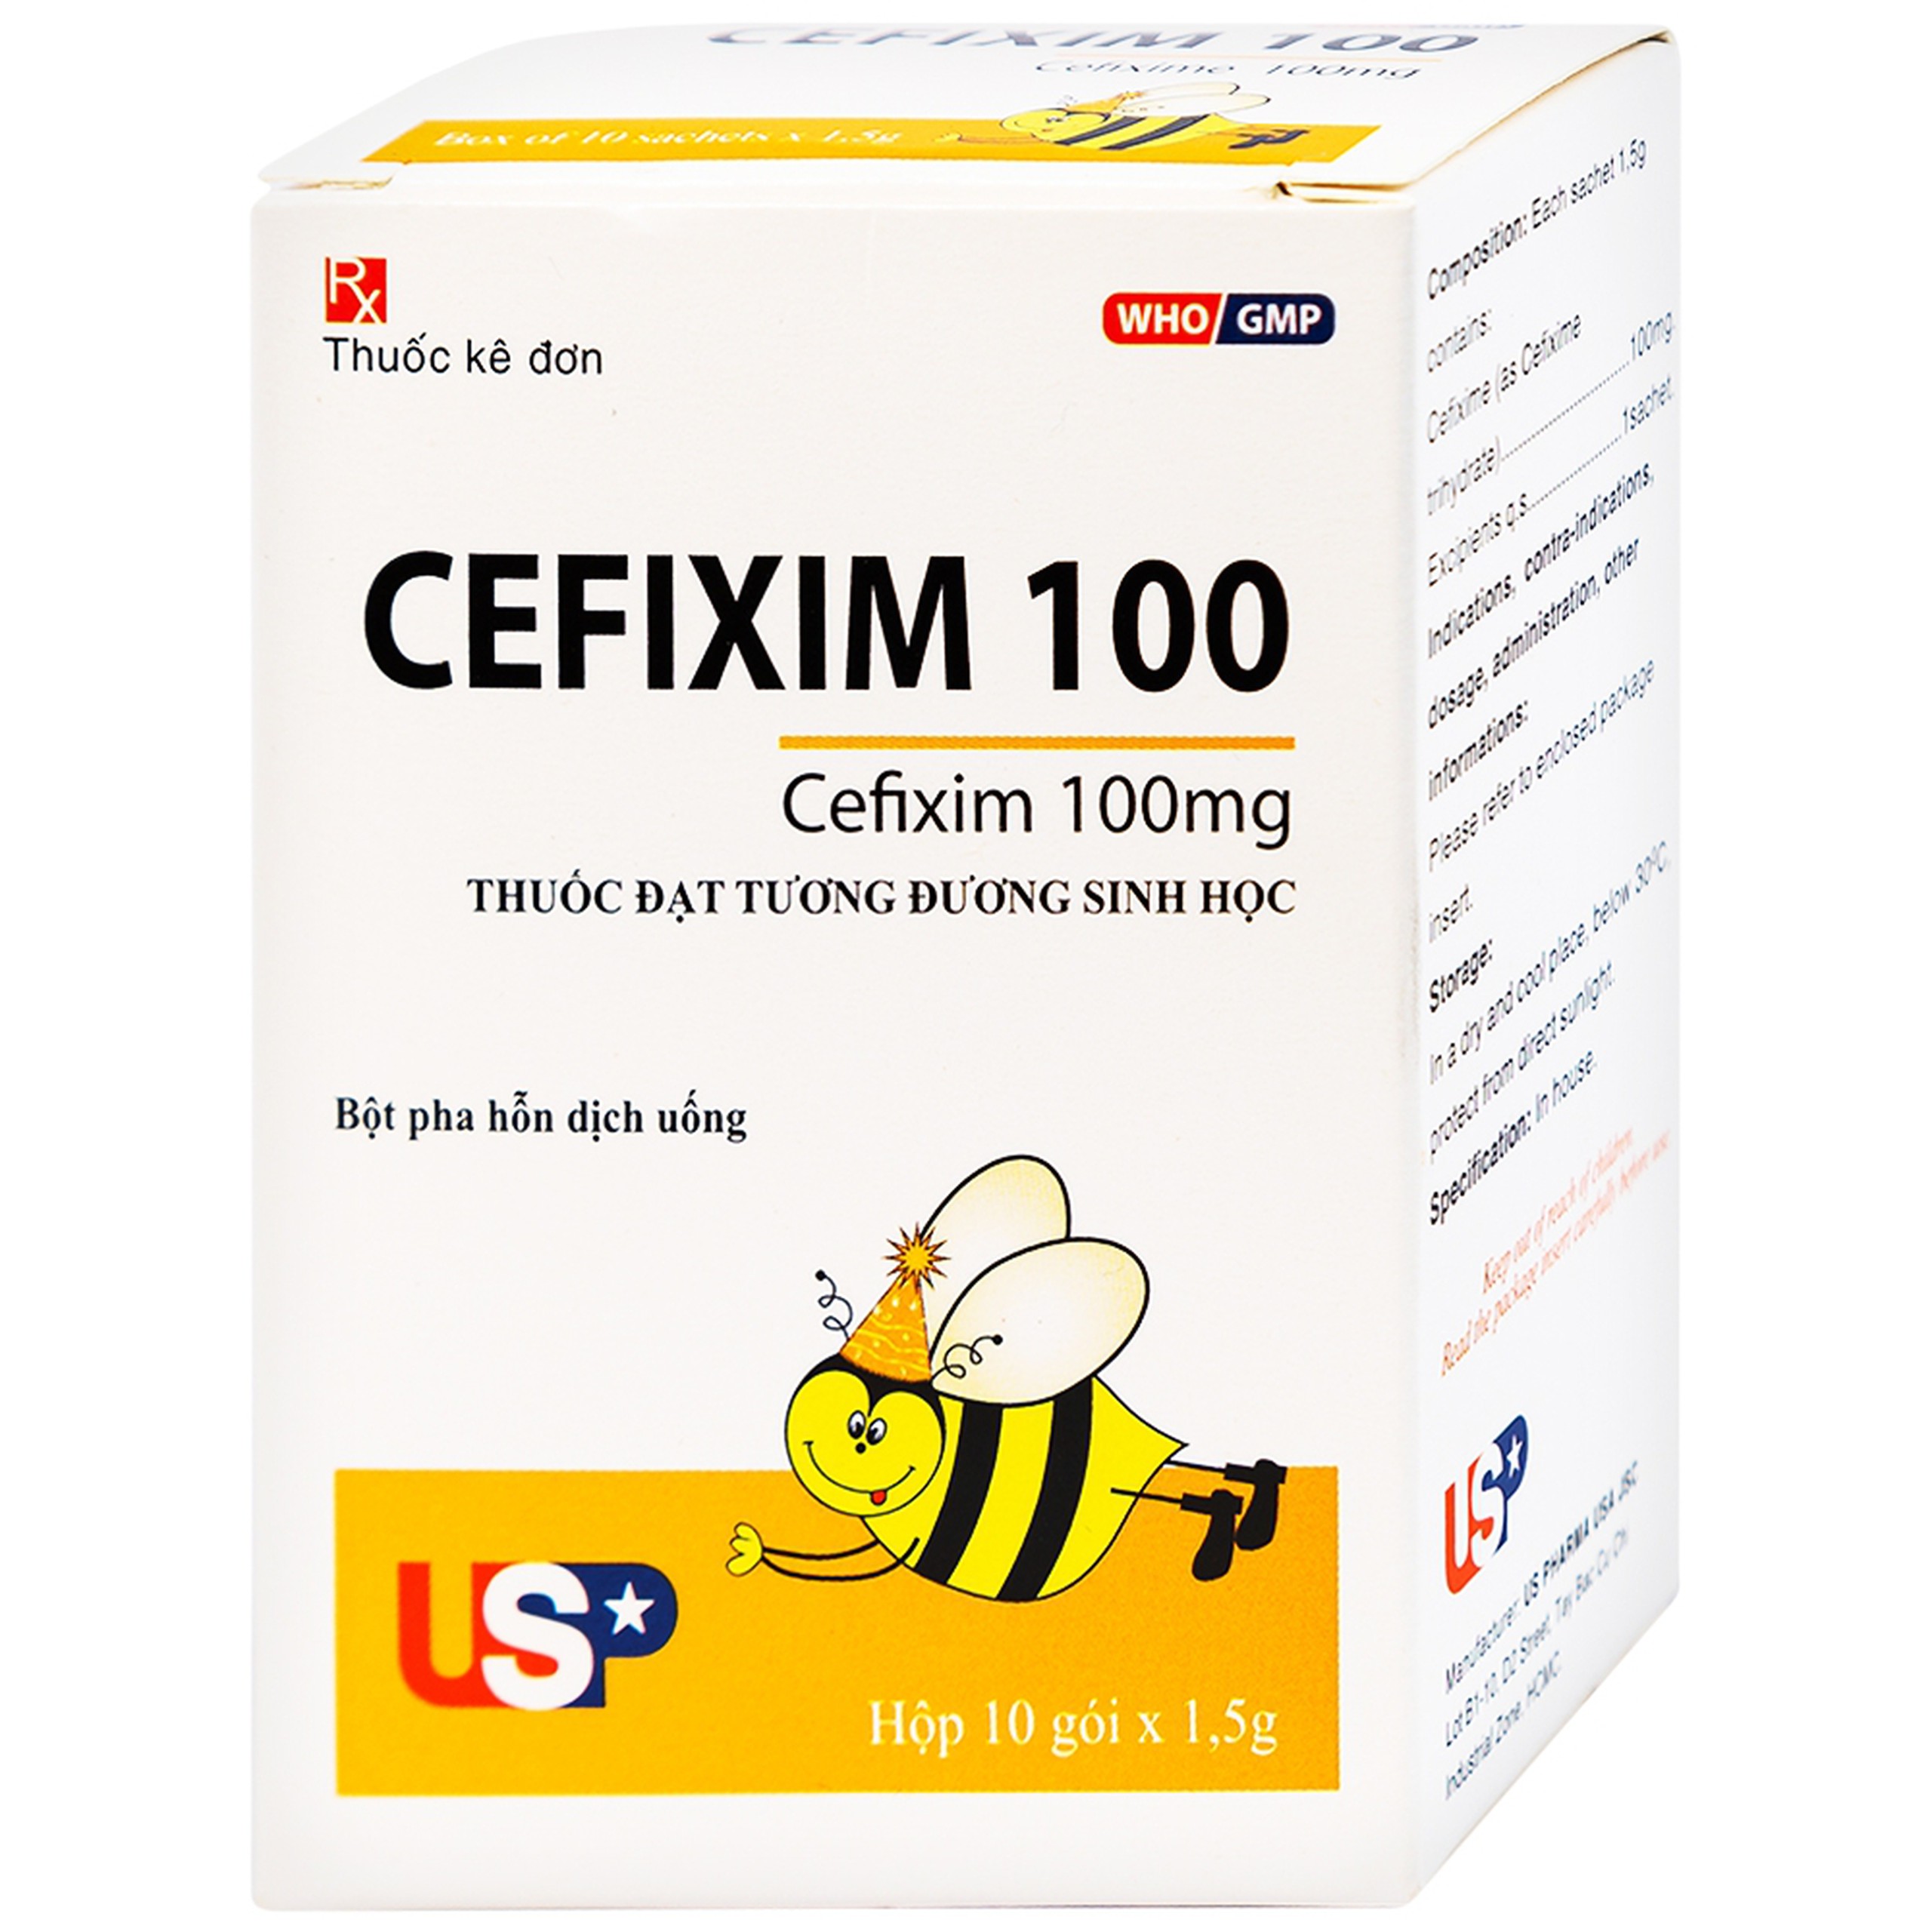 Bột pha hỗn dịch uống Cefixim 100 USP điều trị nhiễm khuẩn (10 gói x 1.5g)